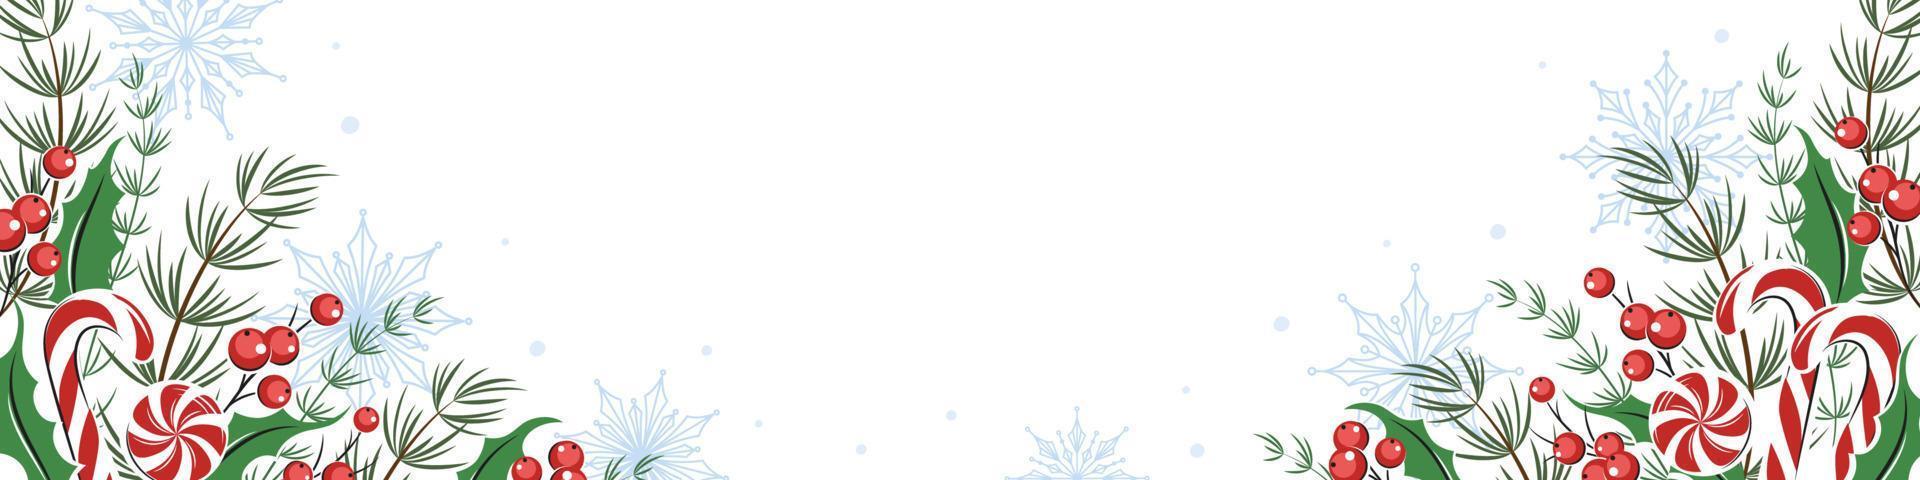 fundo de natal com lugar para texto. banner horizontal, fundo decorado com diferentes plantas de inverno, fundo de biscoitos e doces. ilustração vetorial vetor